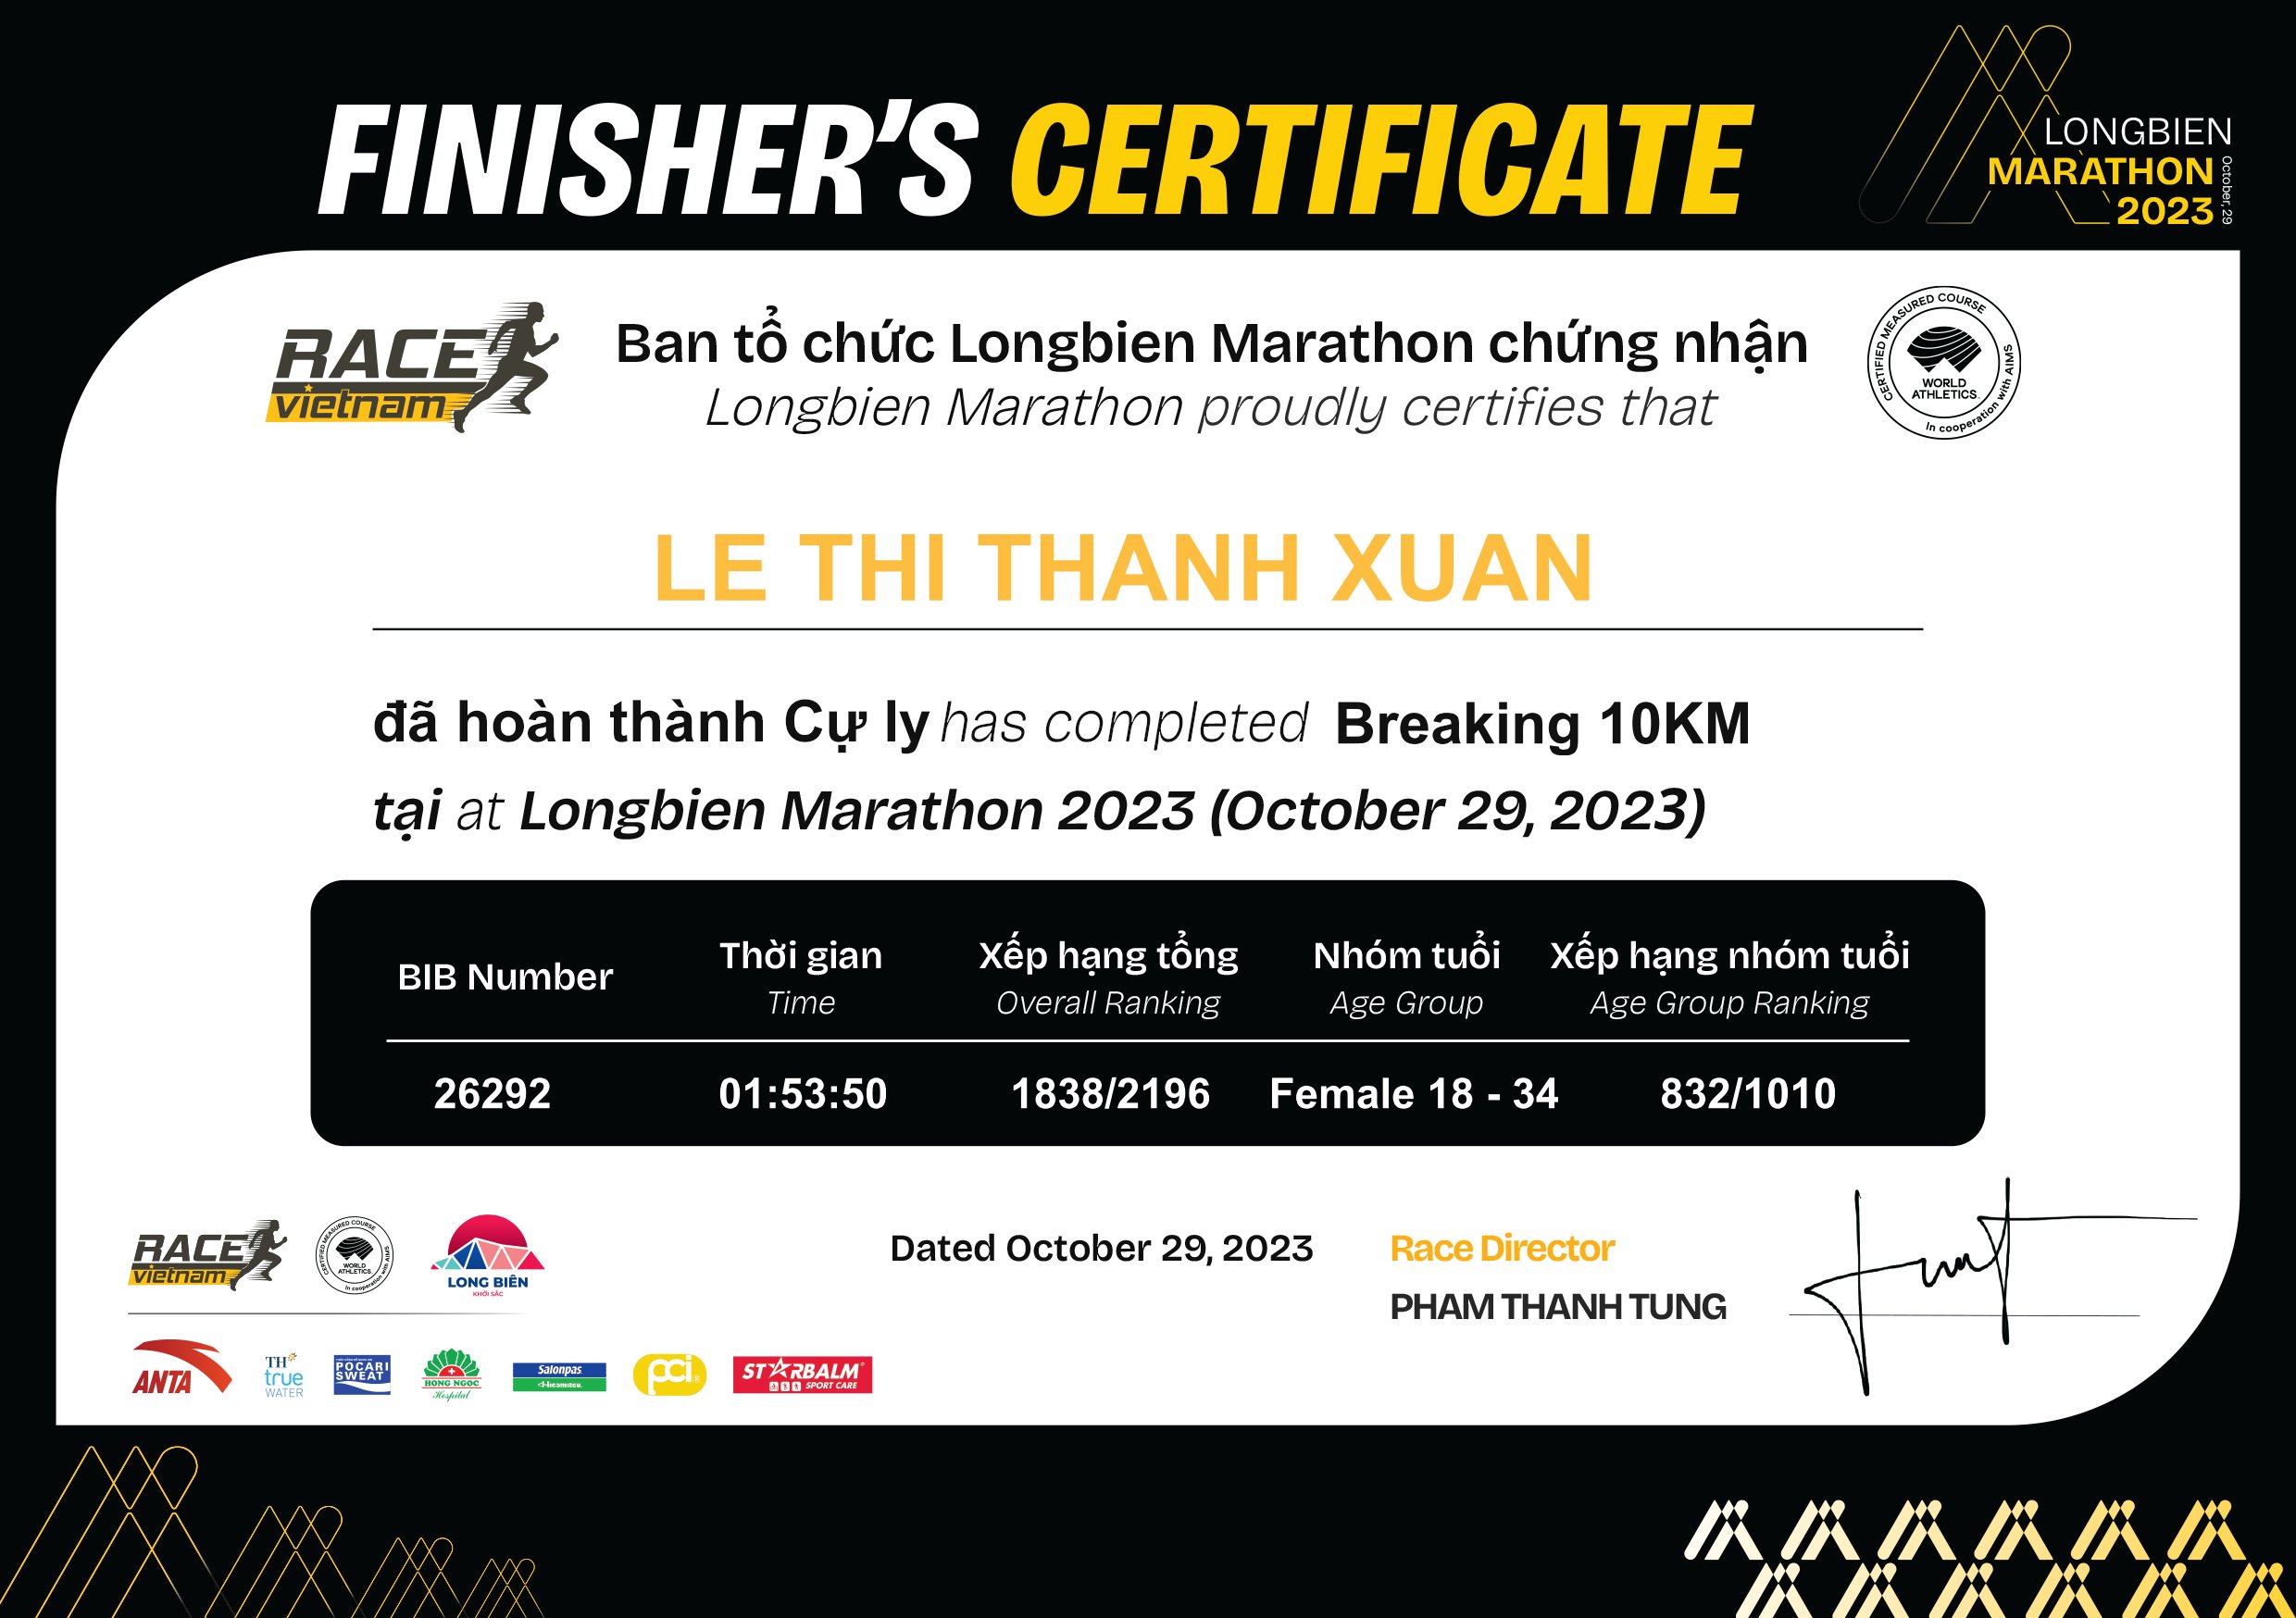 26292 - Le Thi Thanh Xuan